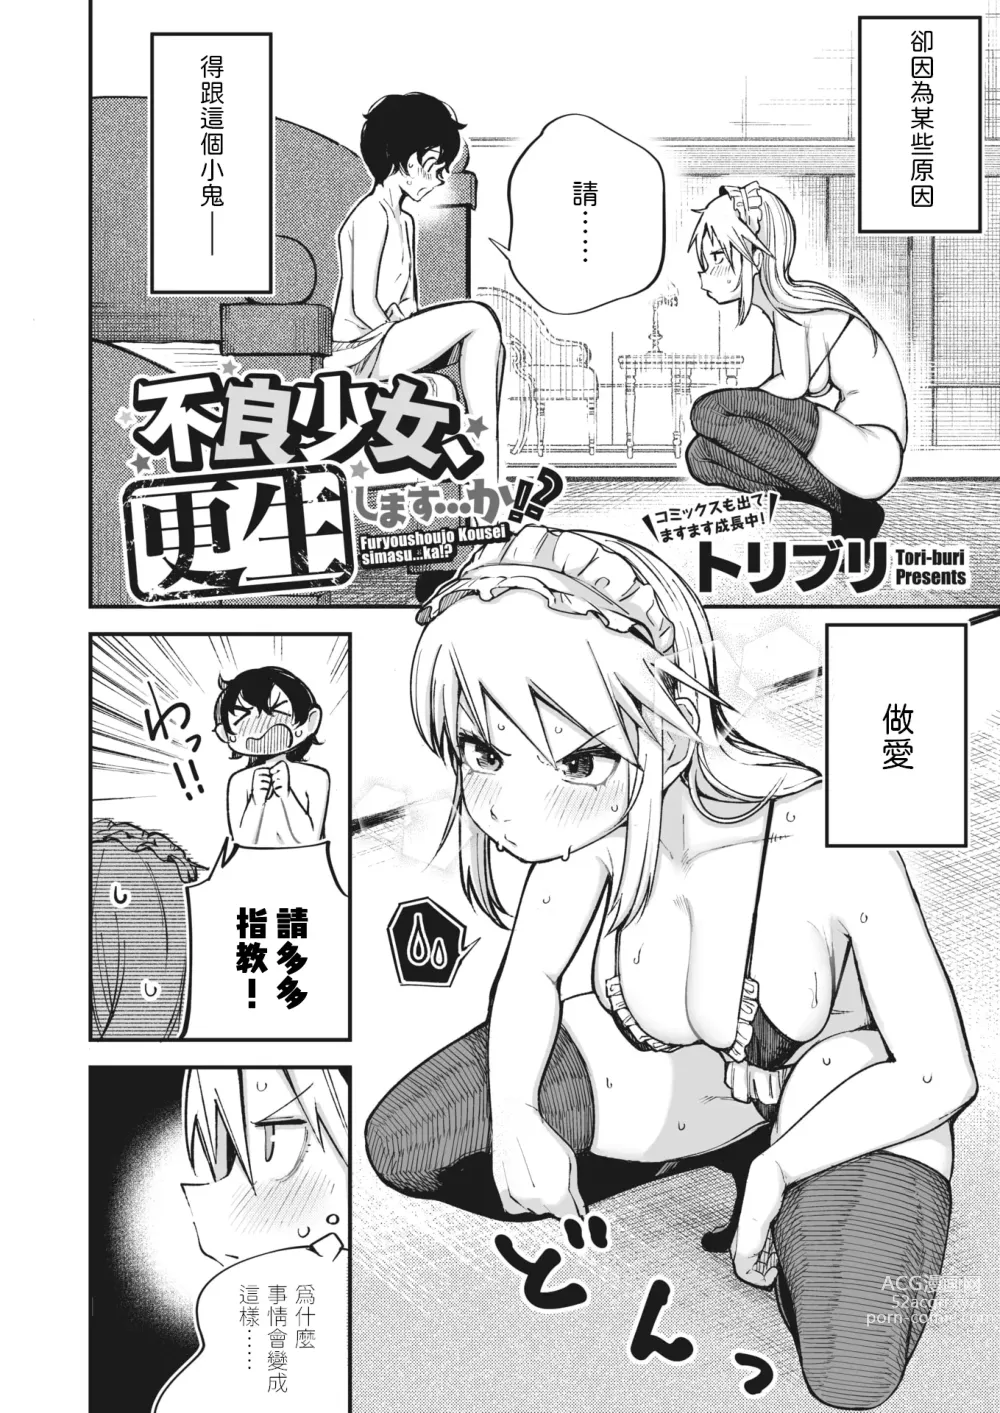 Page 2 of manga Furyou Shoujo,   Kousei shimasu... ka!?